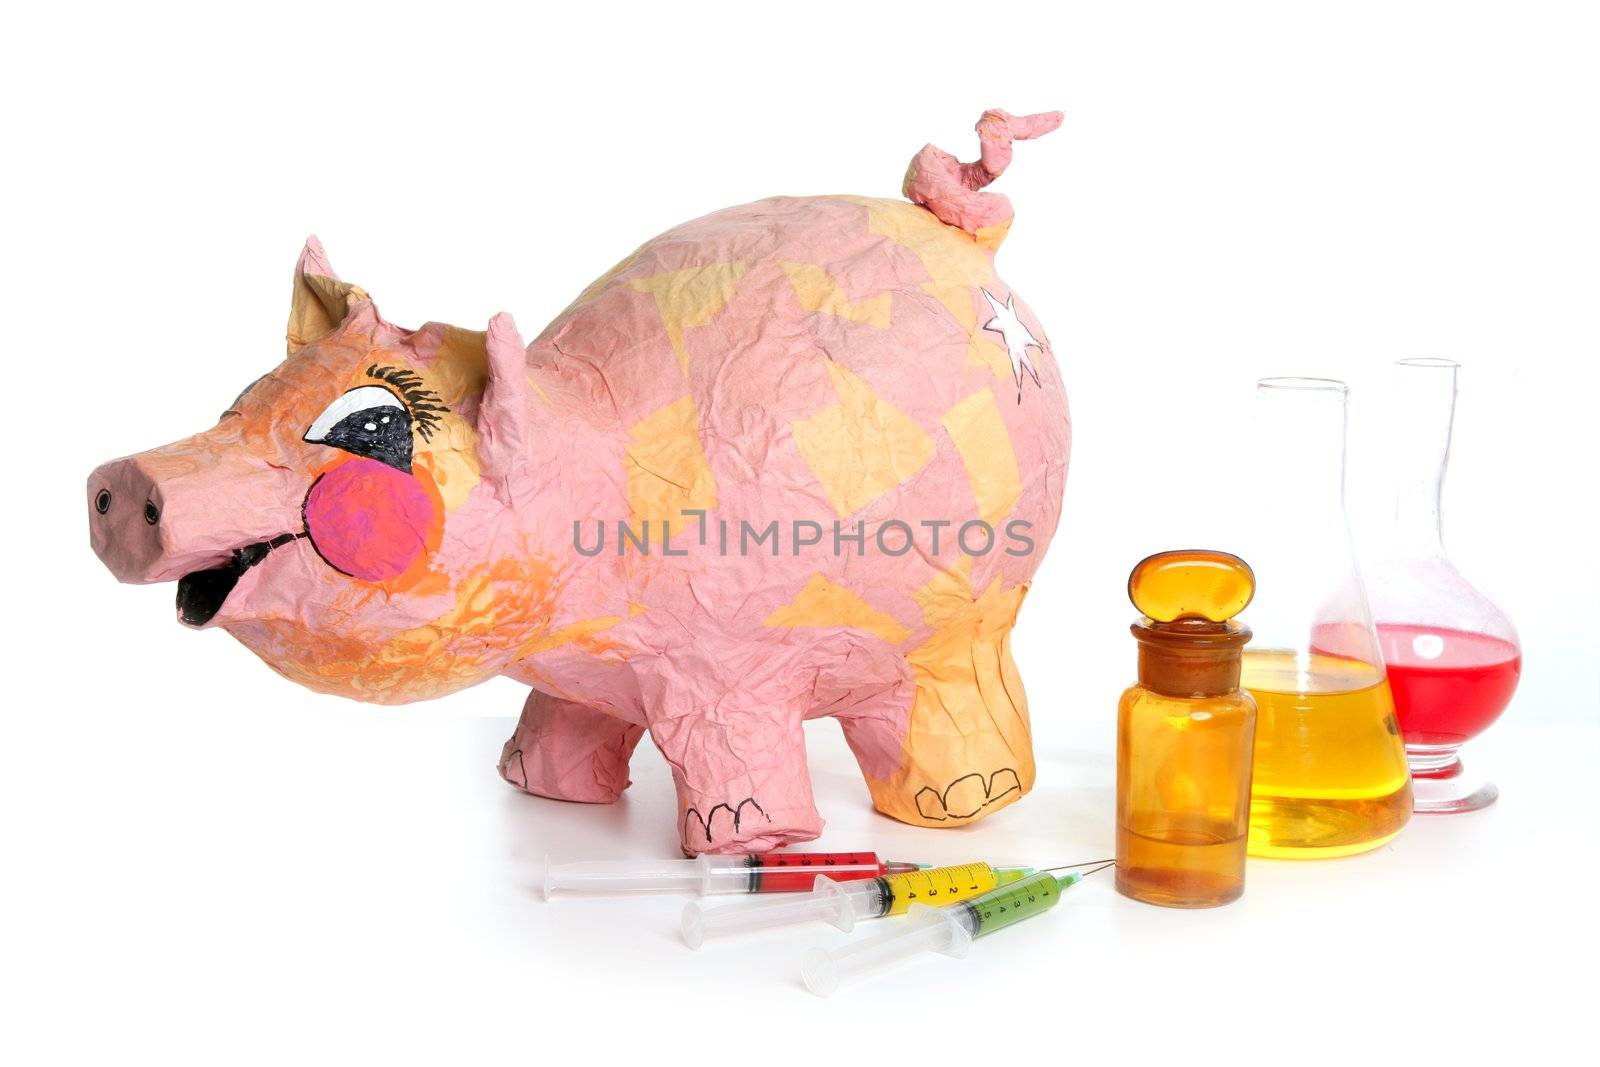 Beautiful little pink pig with medicine, swine AH1N1 flu metaphor